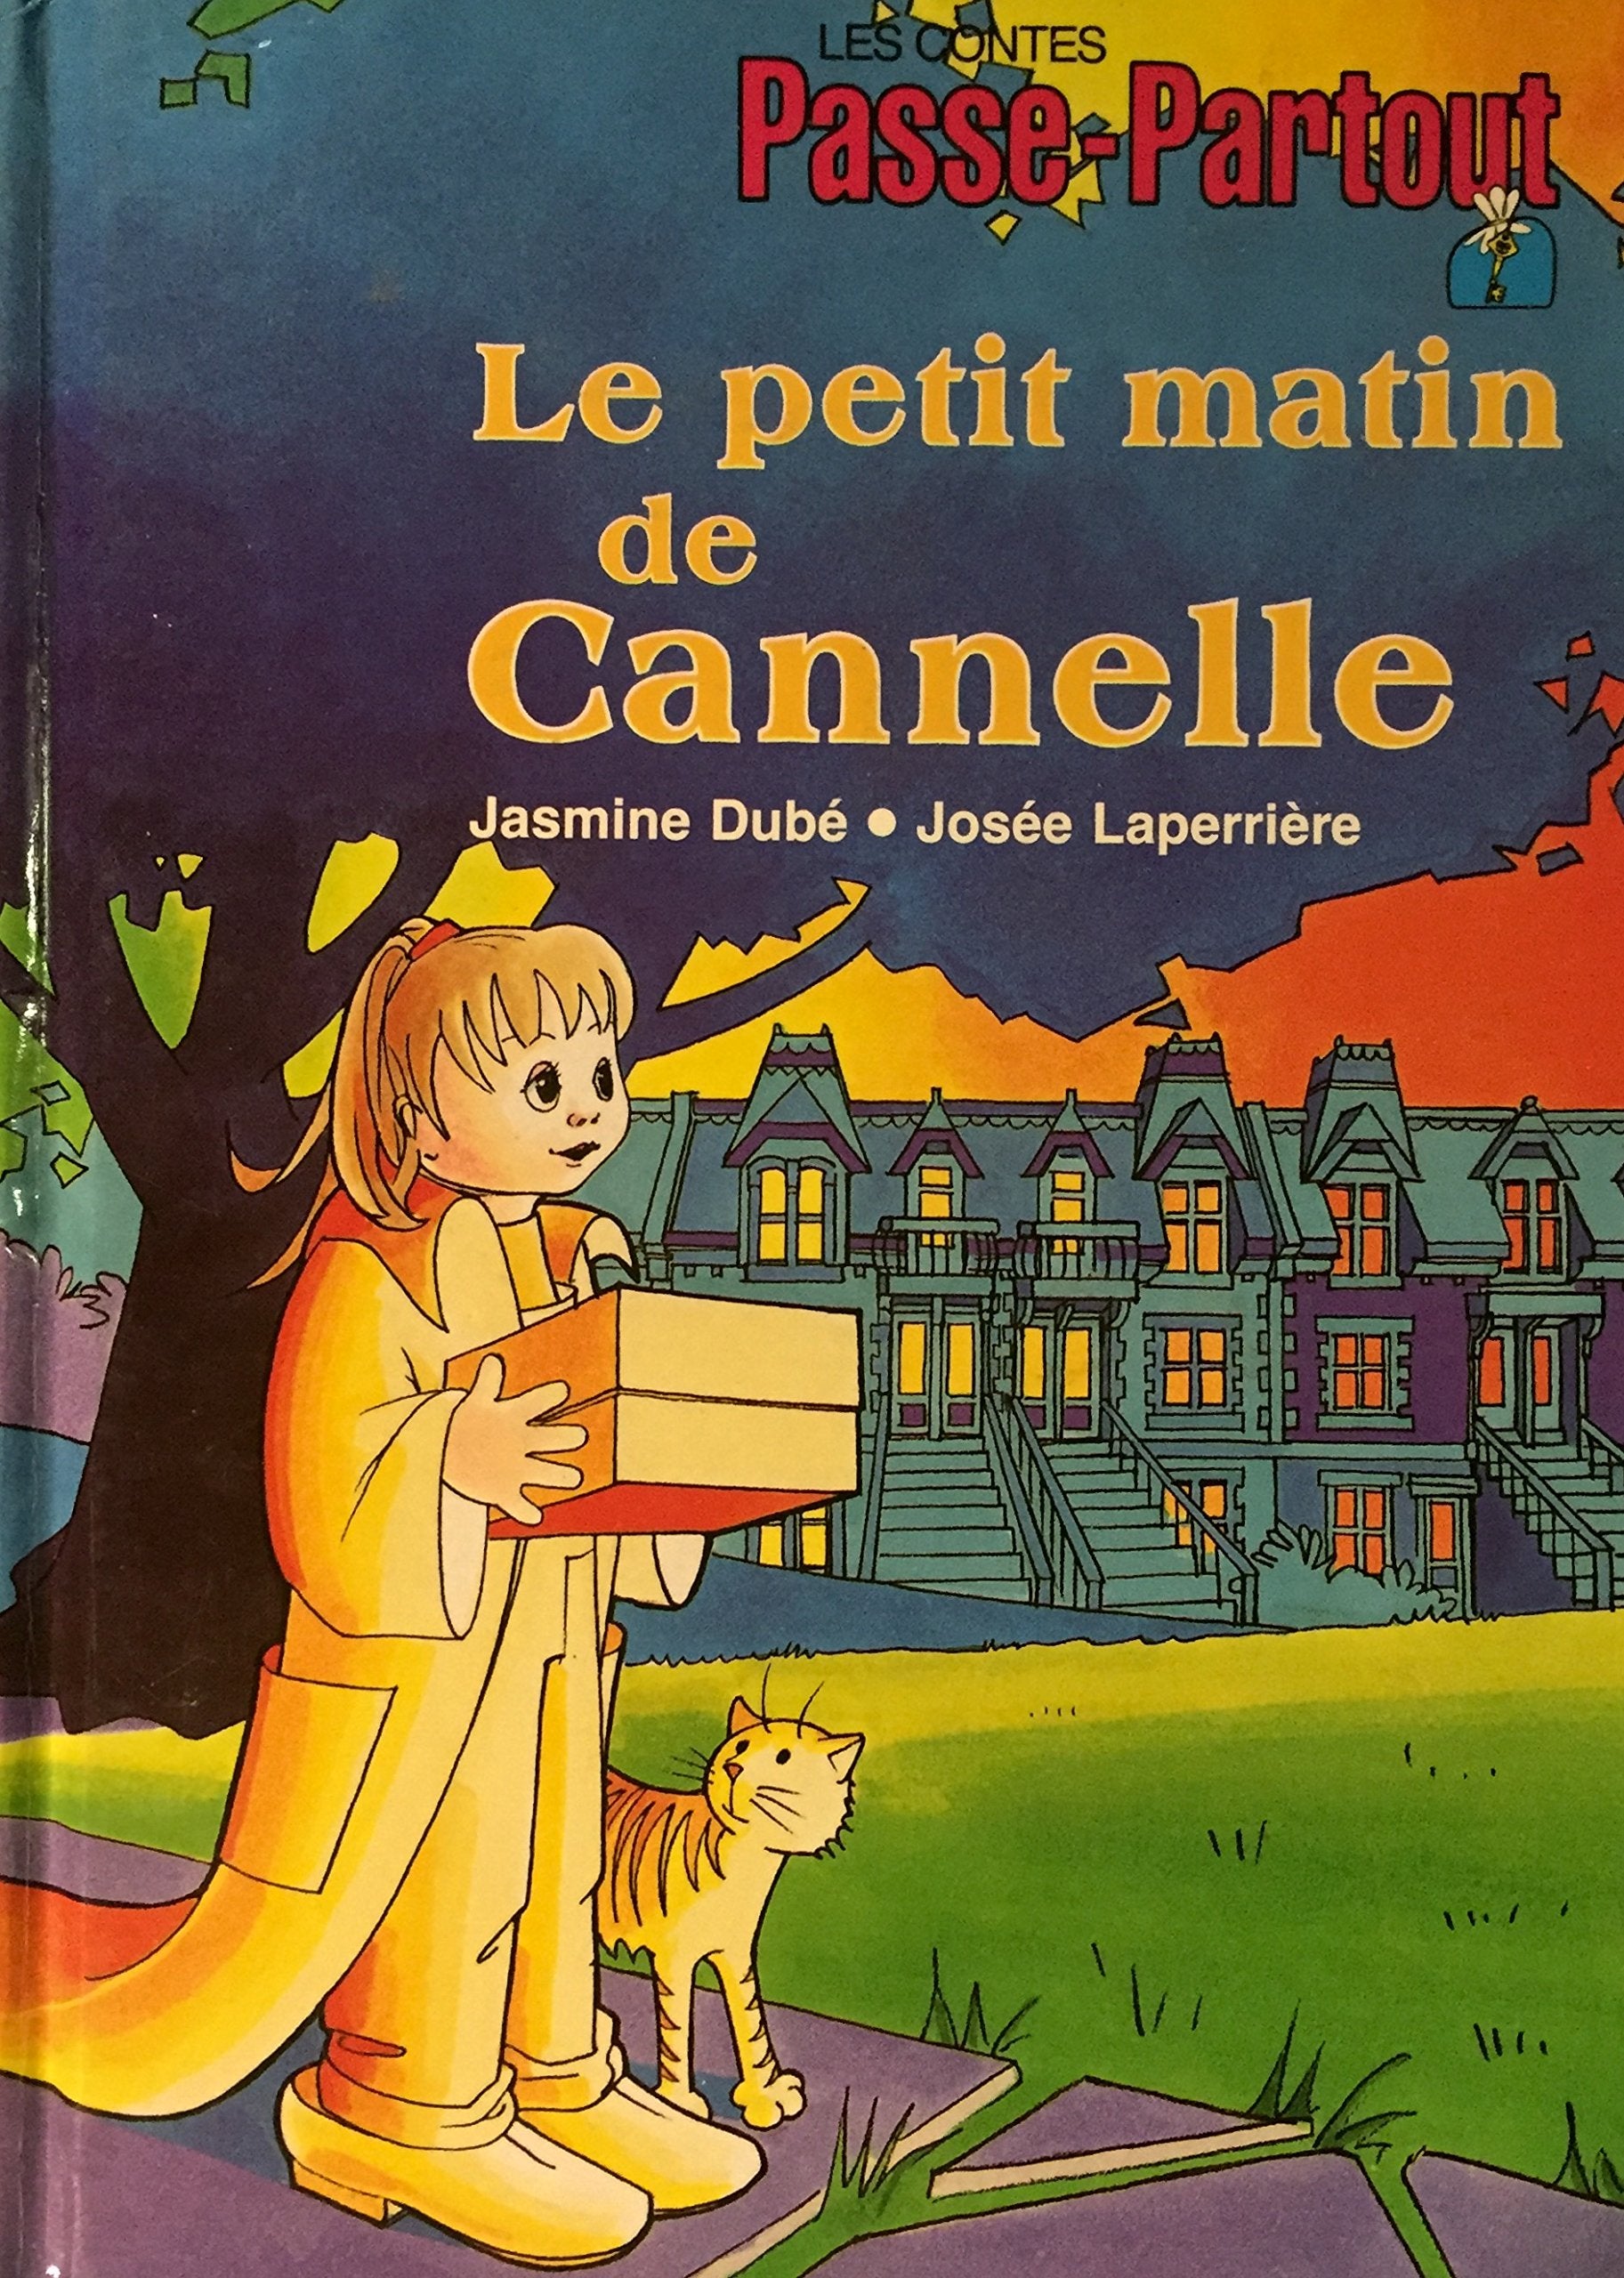 Livre ISBN 2551123380 Les contes Passe-Partout : Le petit matin de Cannelle (Jasmine Dubé)